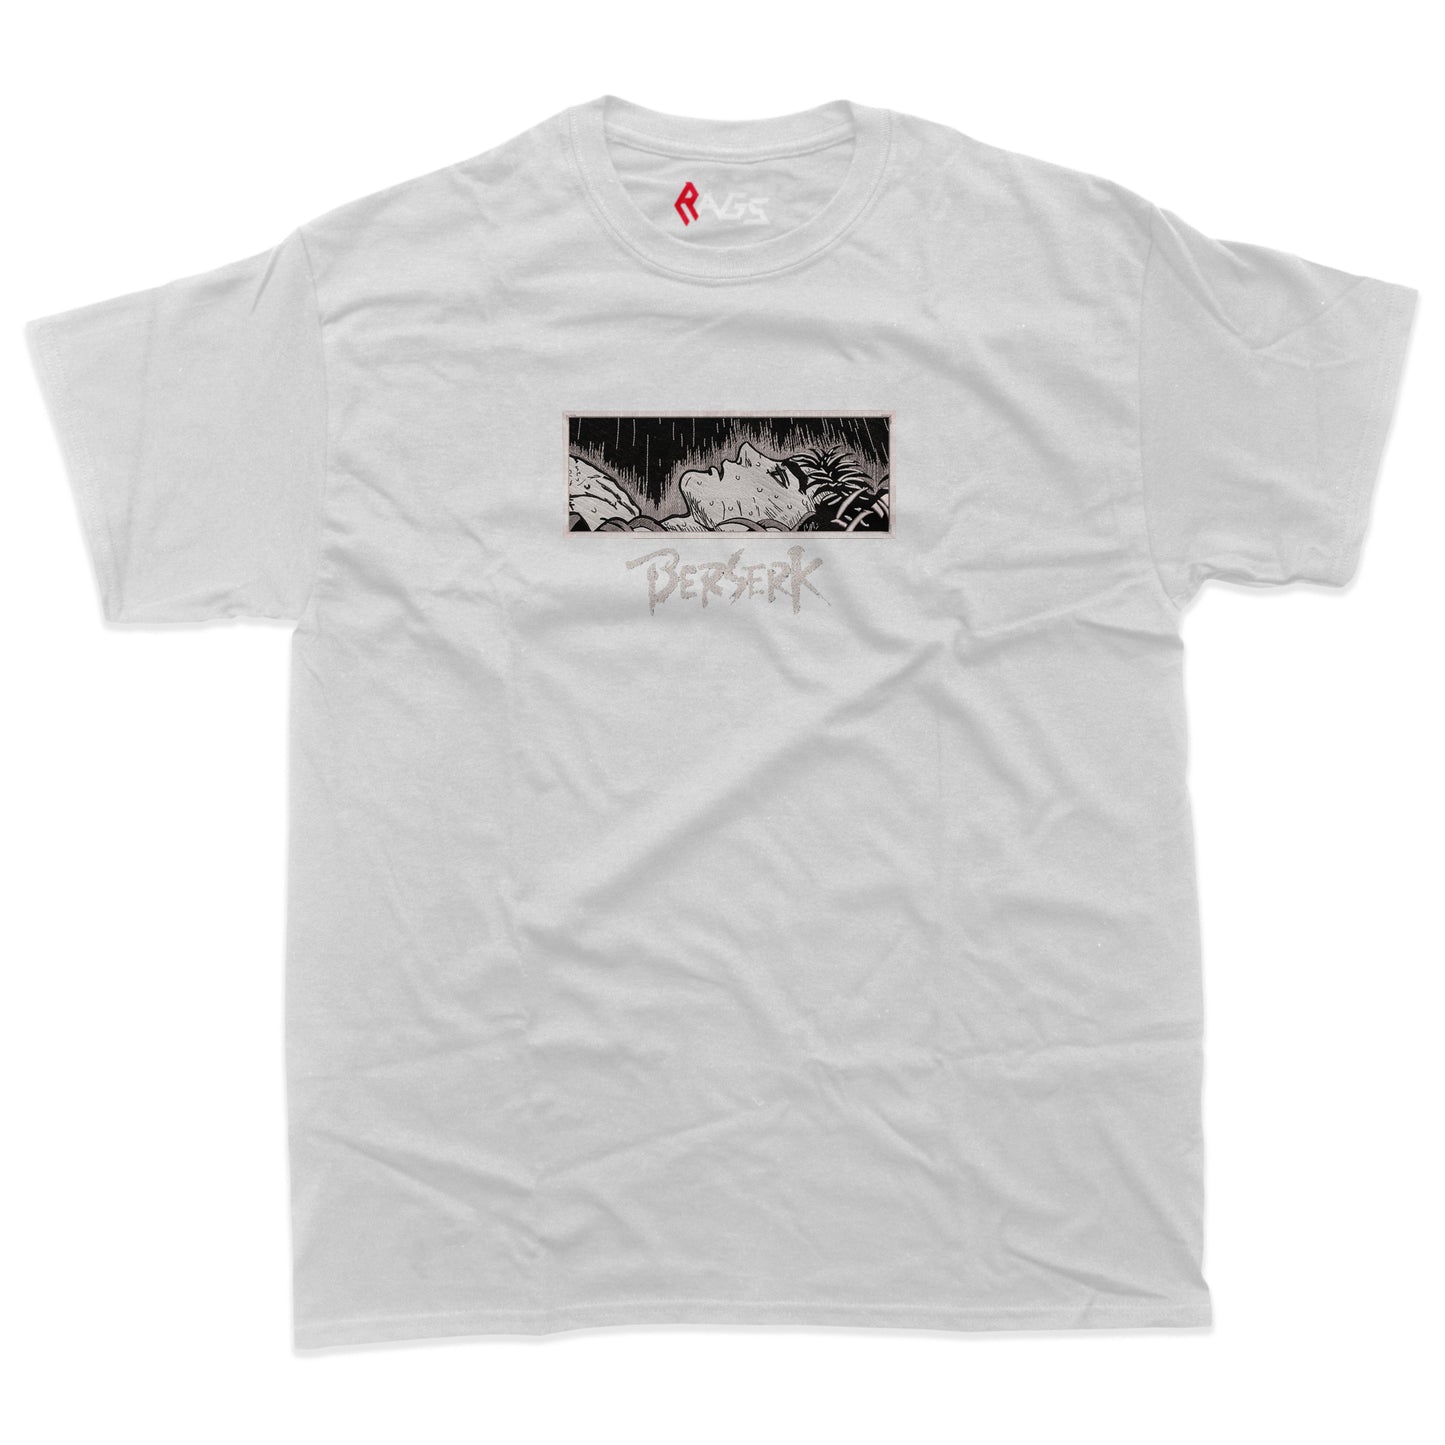 Guts - Berserk Embroidered T-Shirt